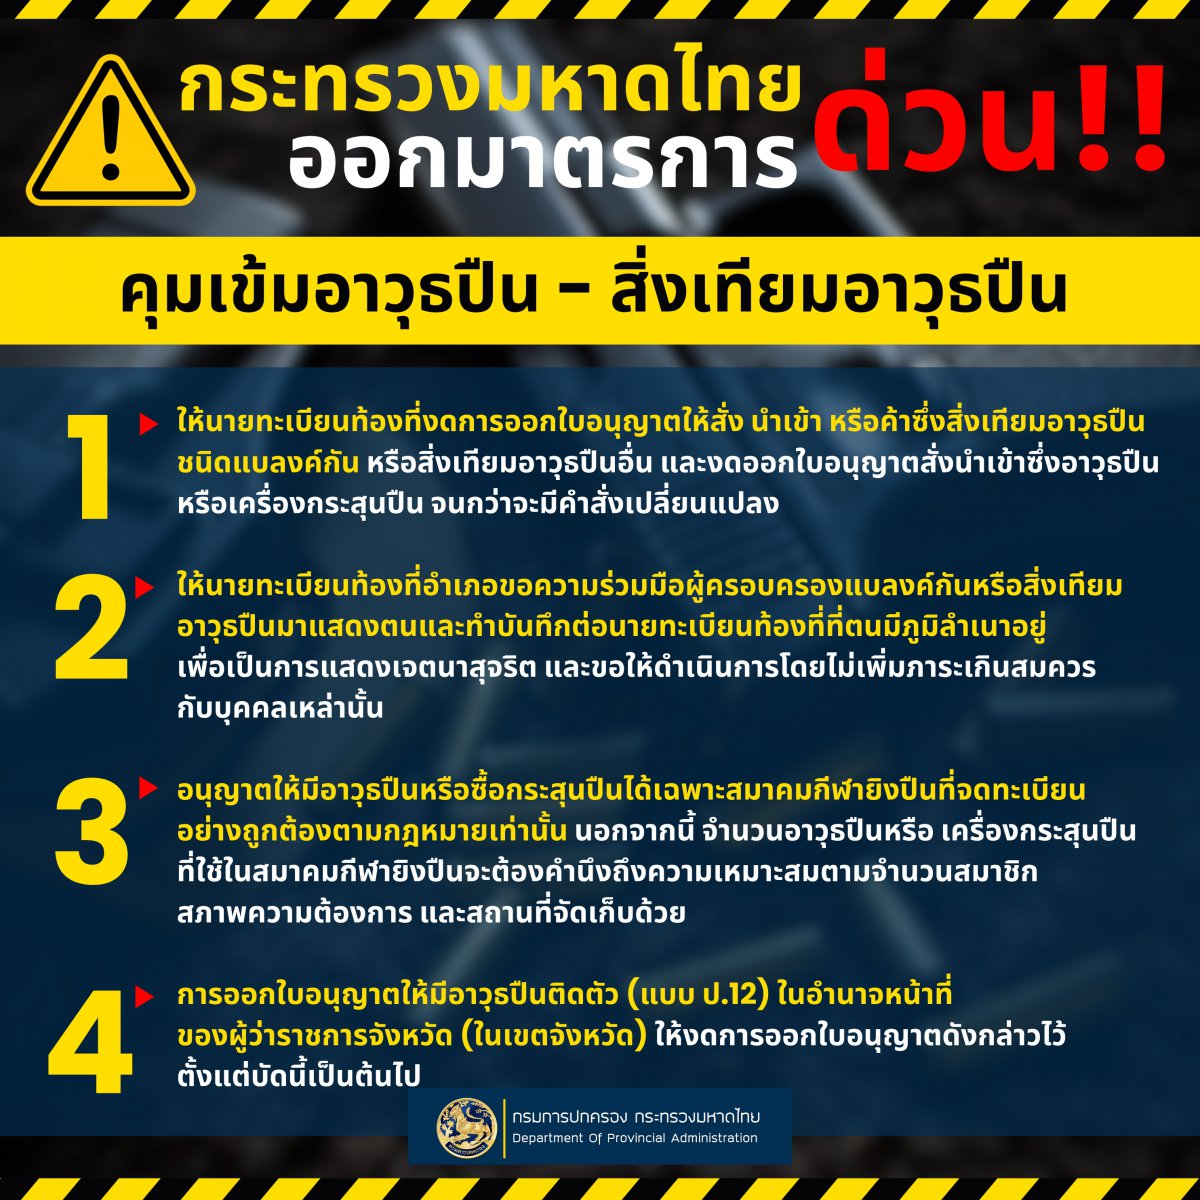 กระทรวงมหาดไทย ออก 4 มาตรการด่วน!!